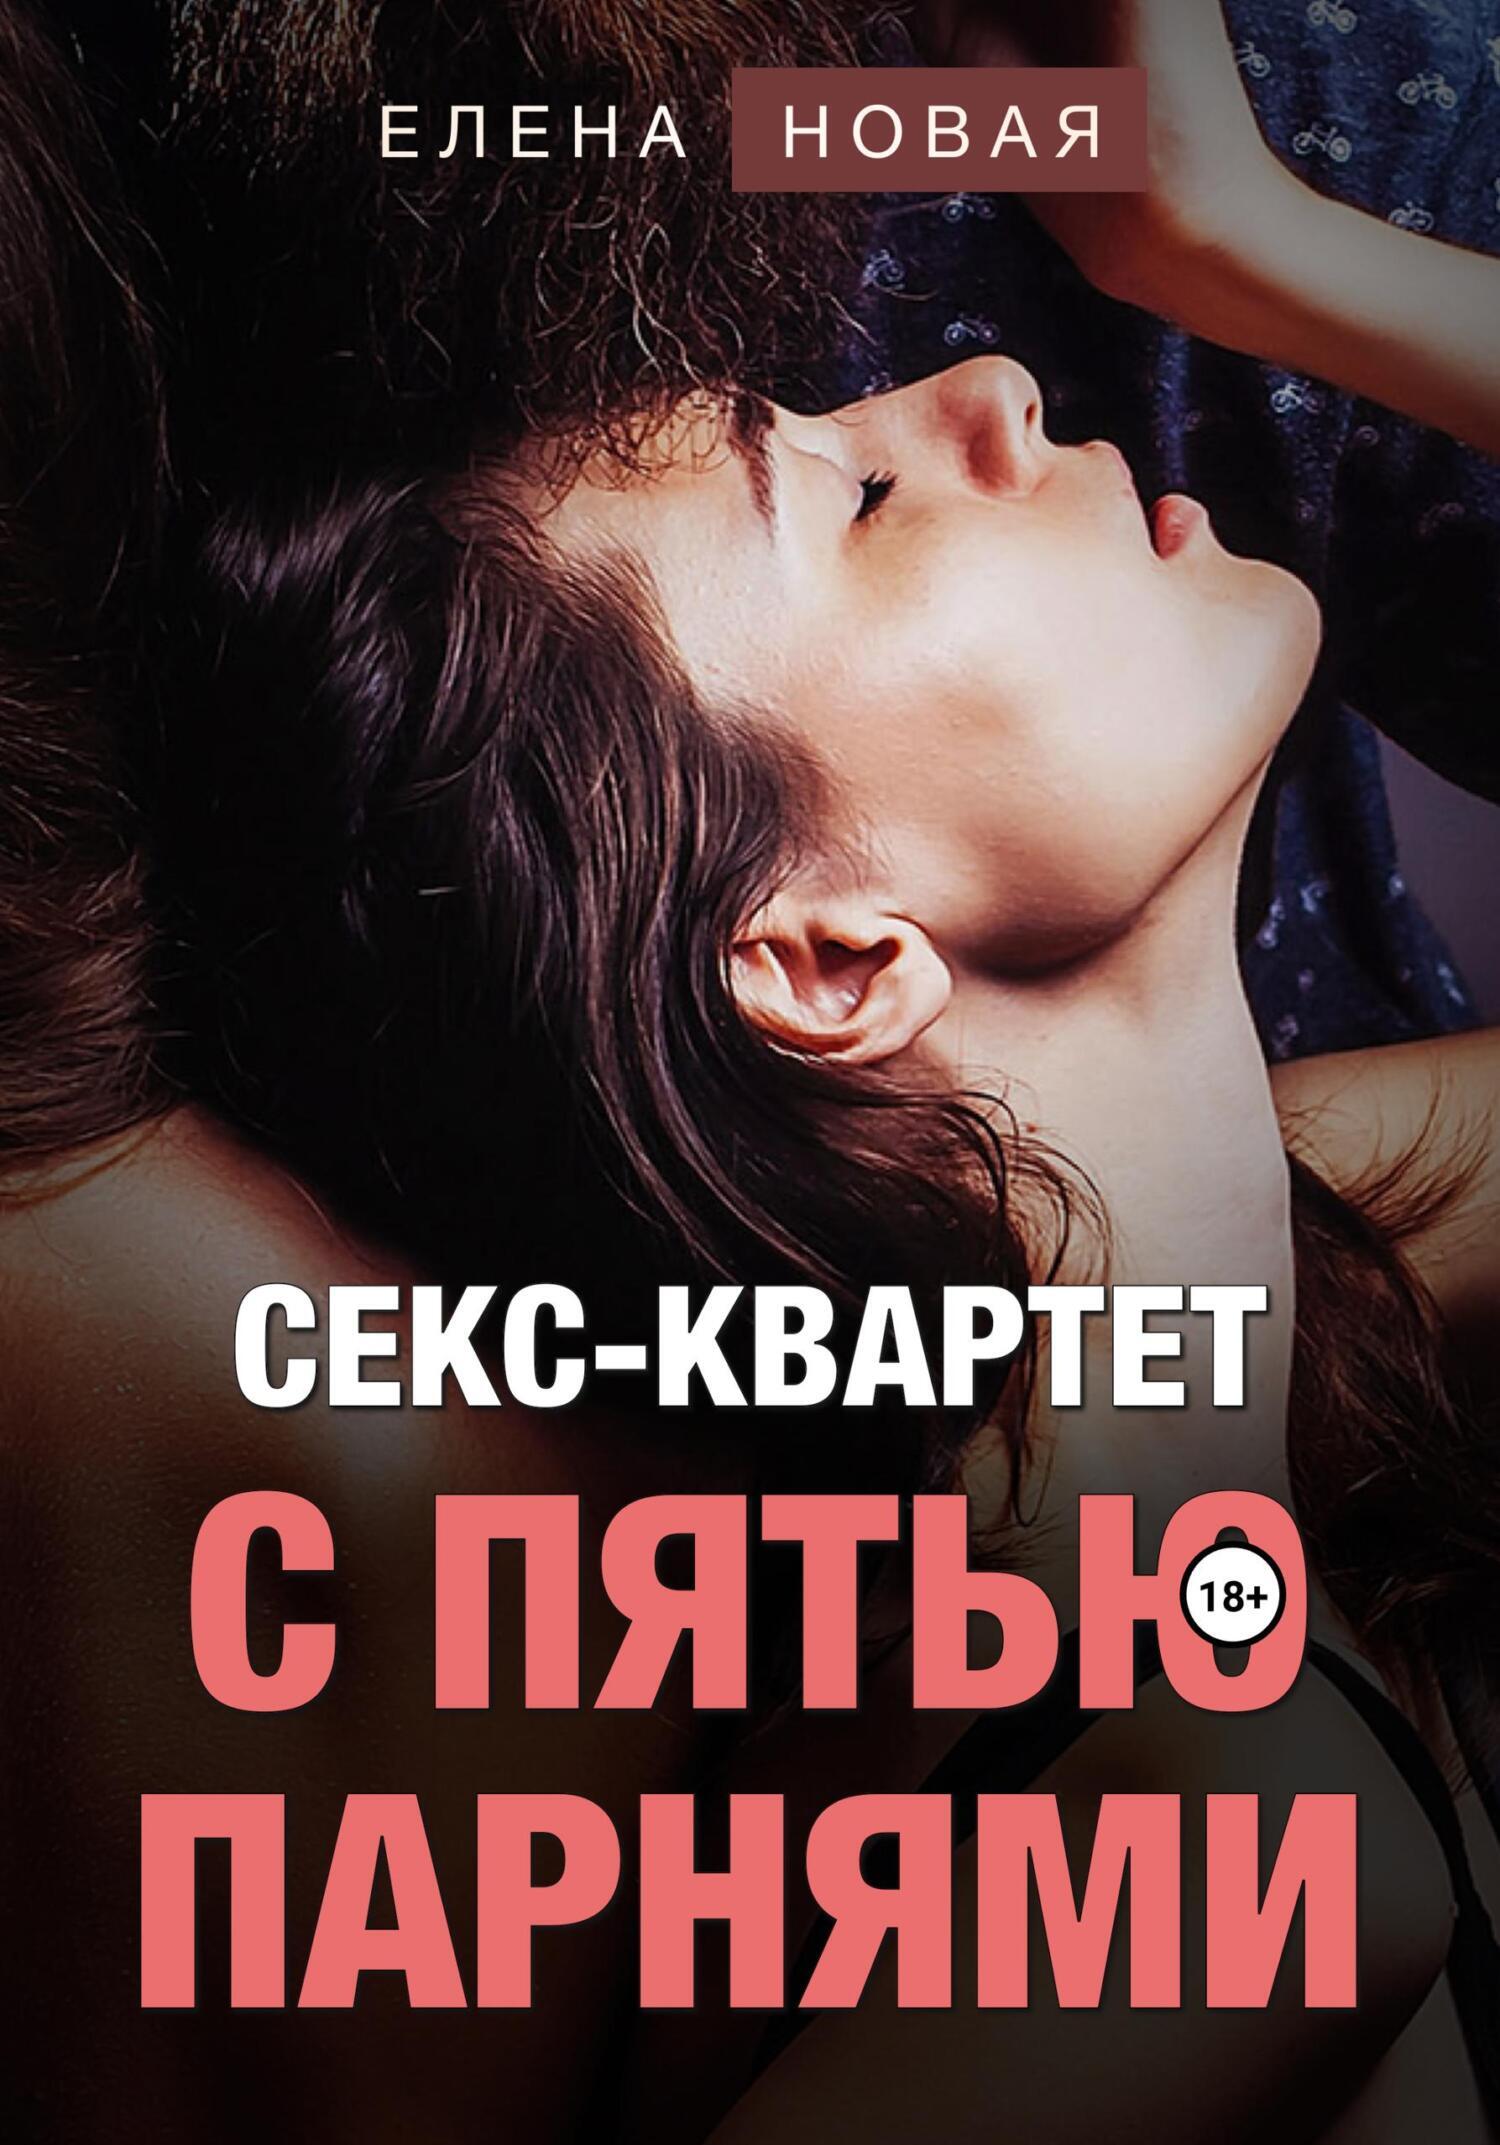 Молодежная эротика онлайн - Эротика: голые секс XXX фото девушки смотреть онлайн бесплатно